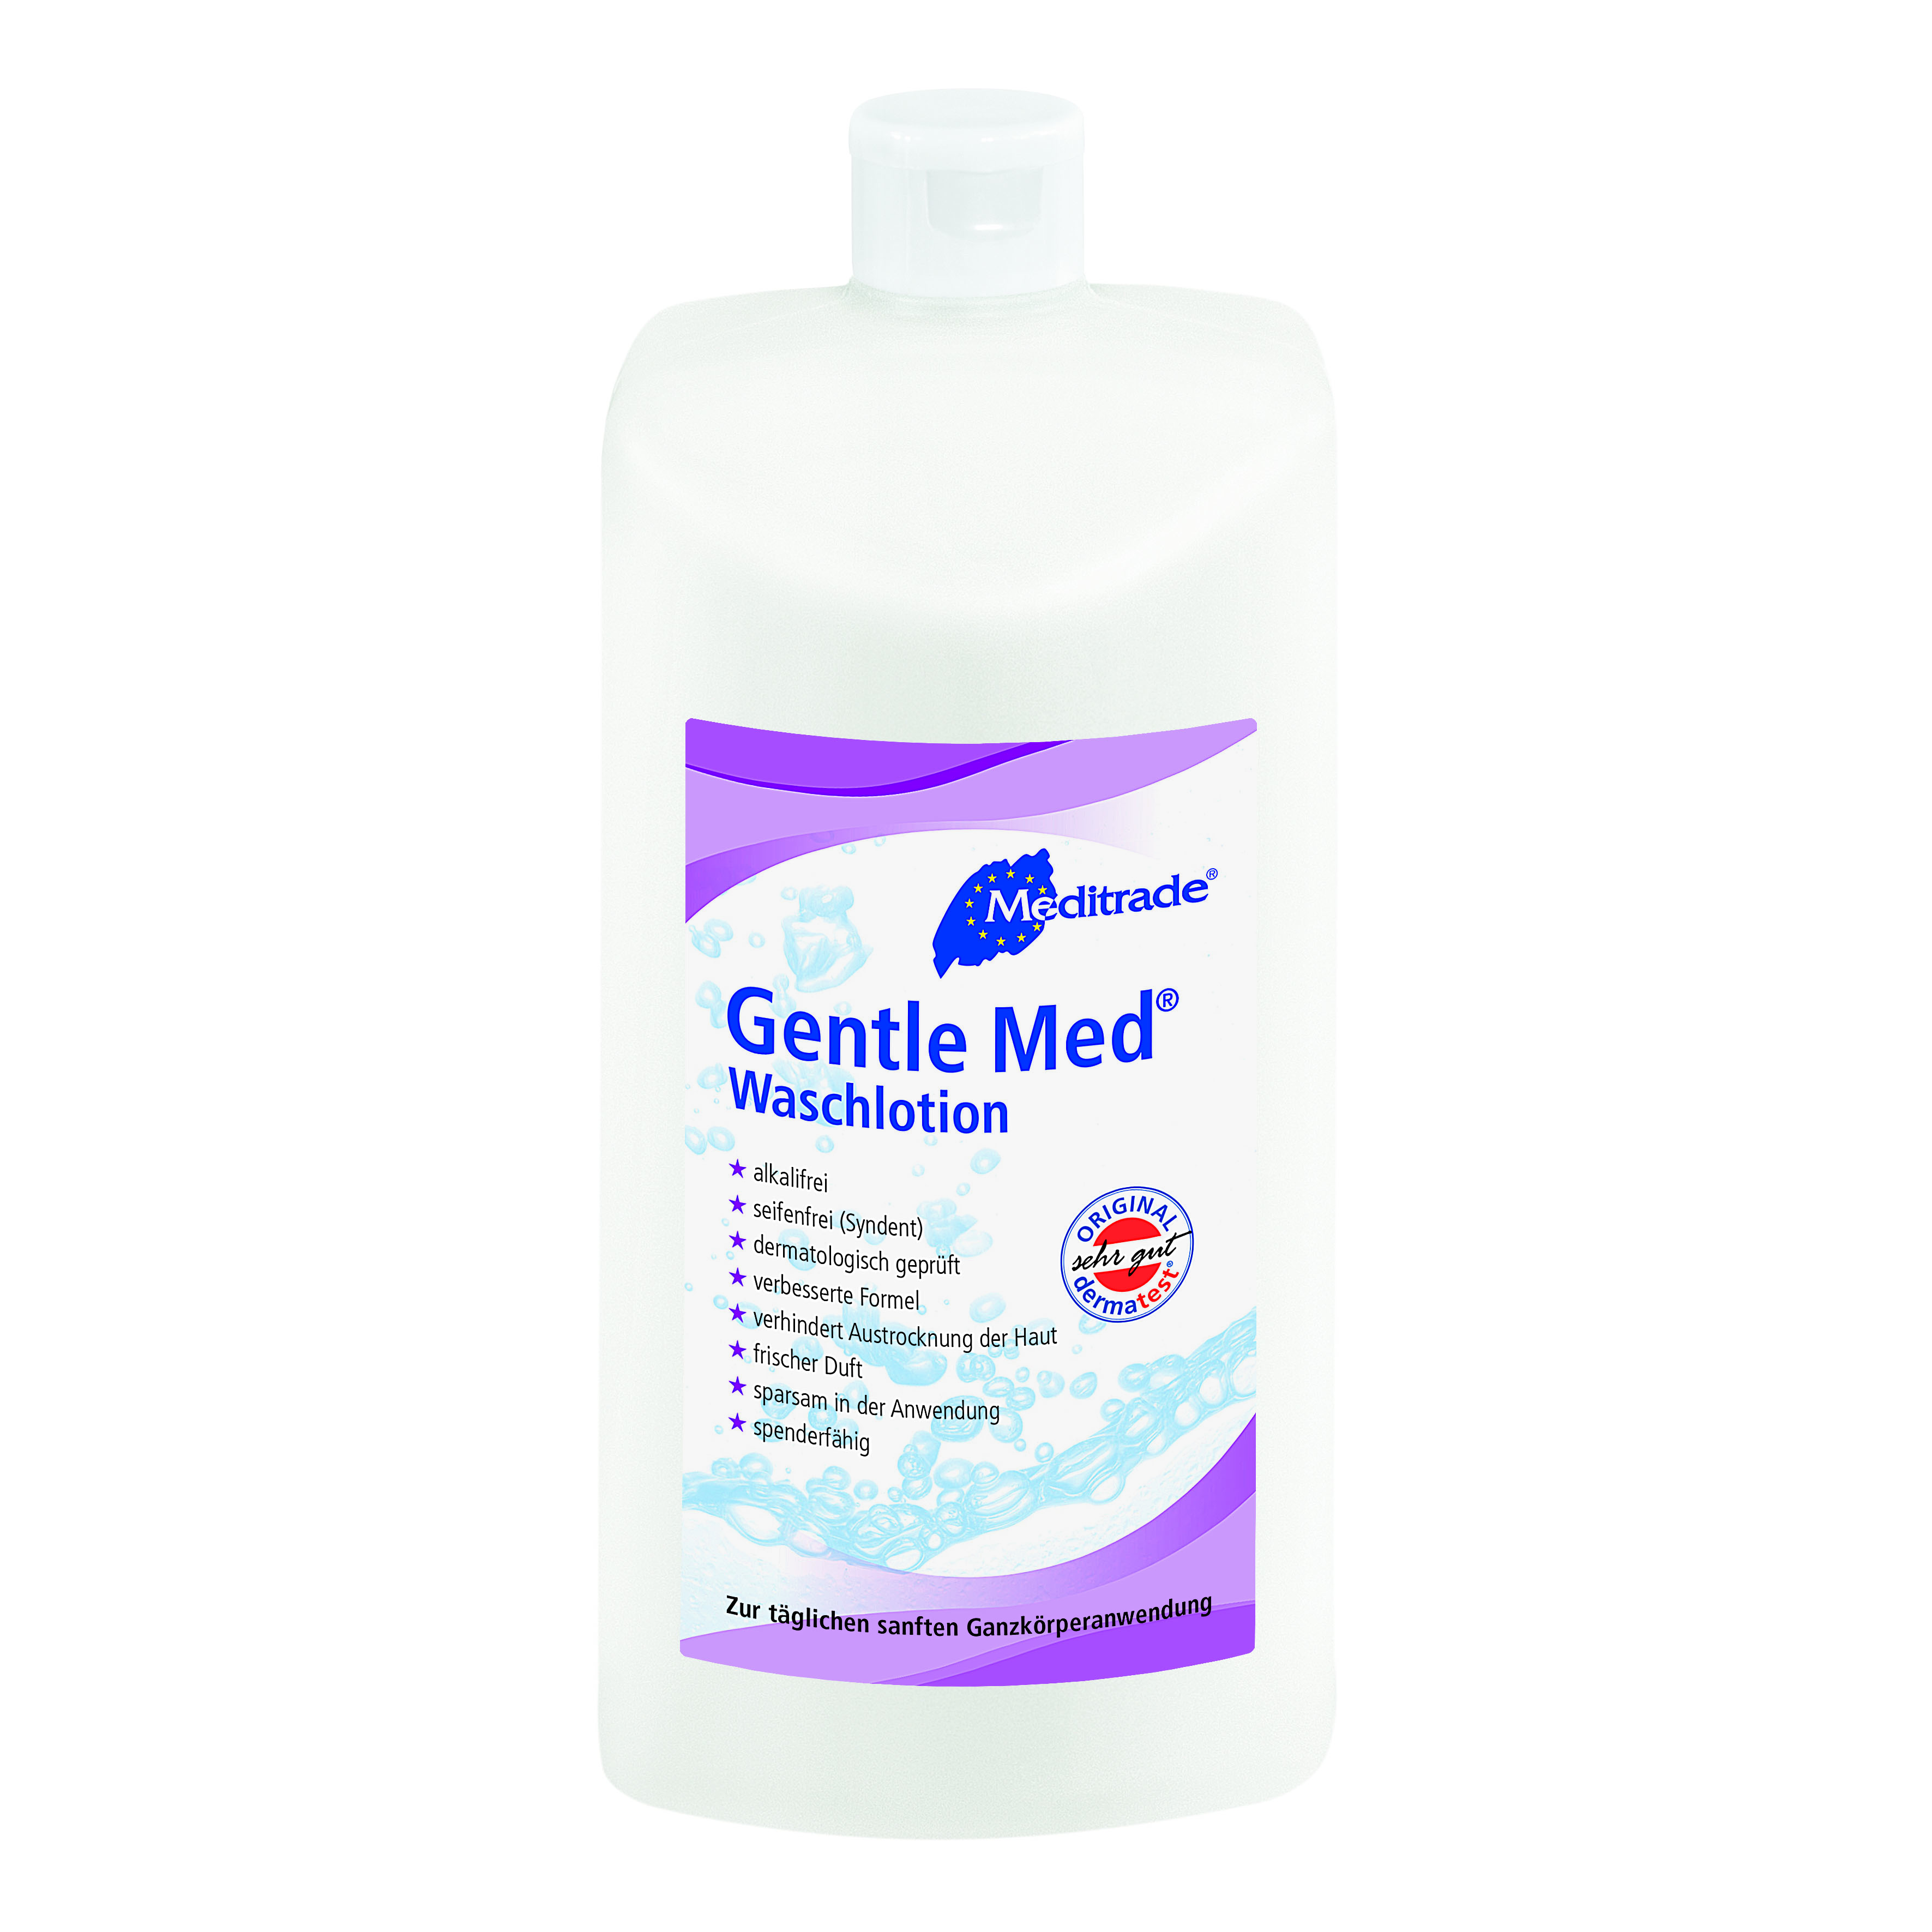 Gentle Med® Waschlotion, 1000ml